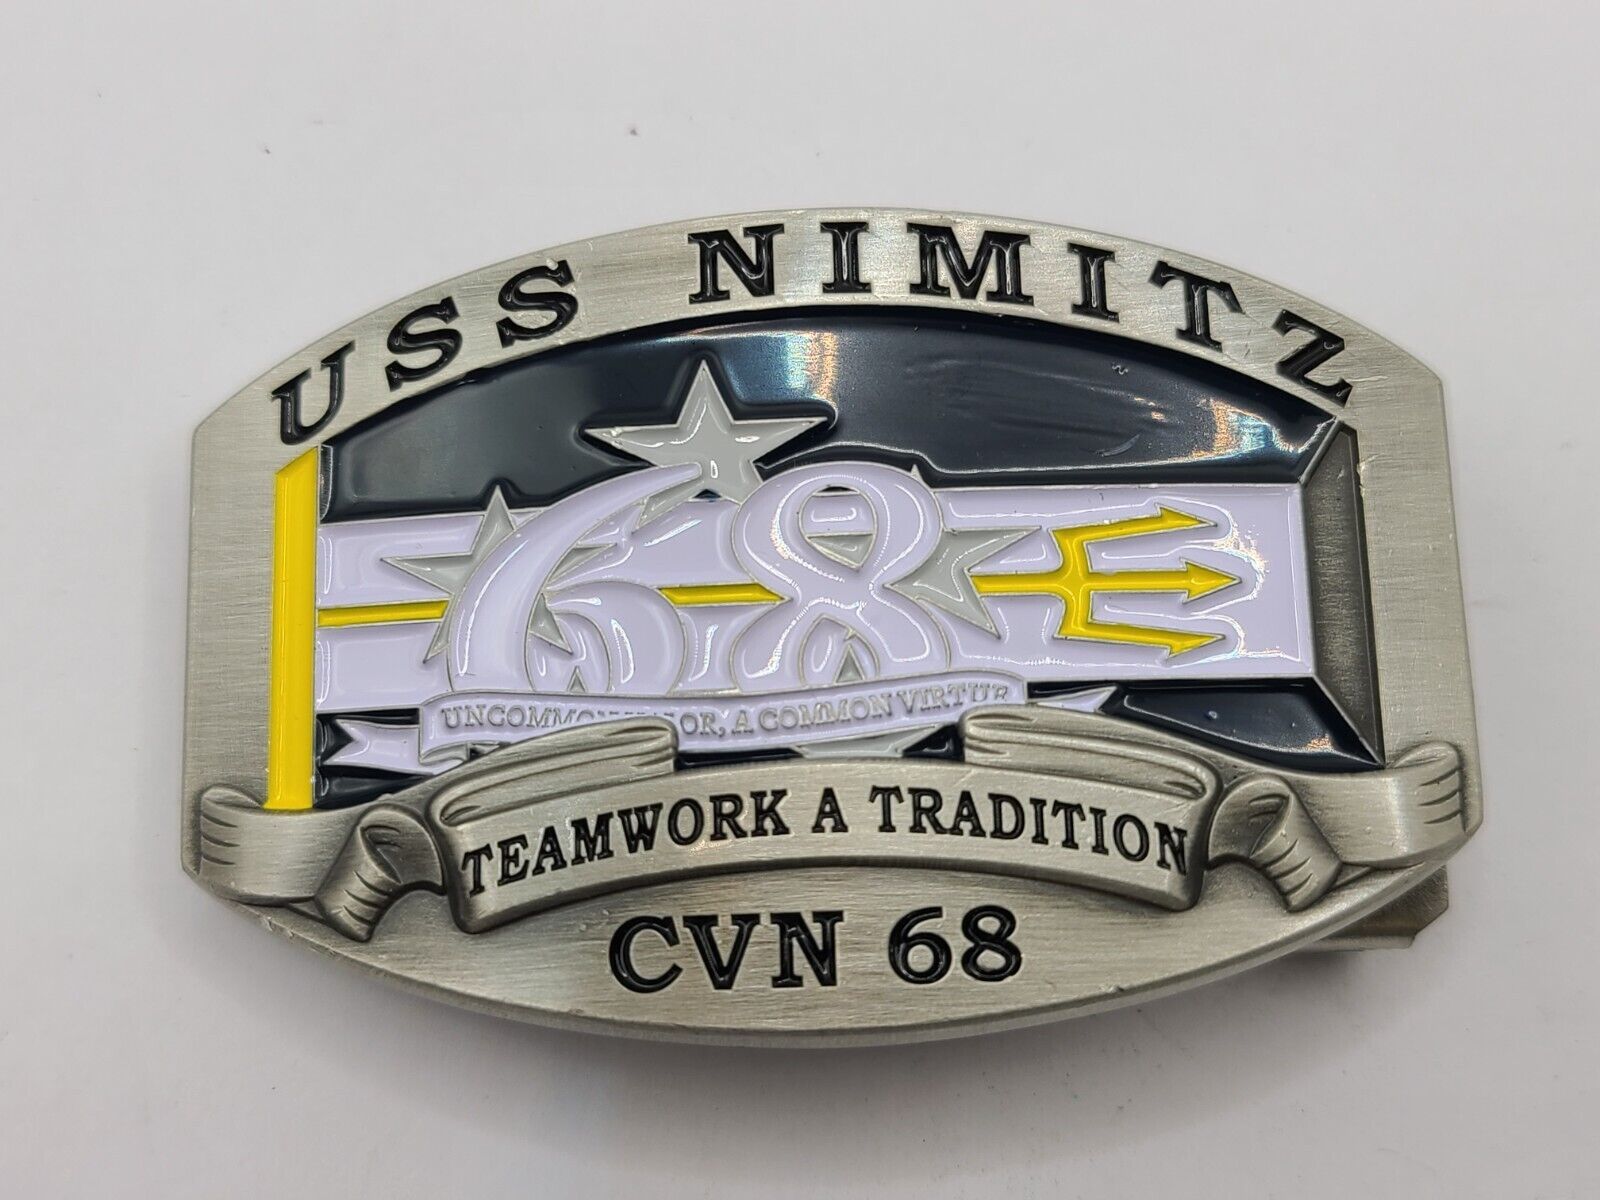 The Corps USS NIMITZ CVN 68 Belt Buckle Antique Silver Color